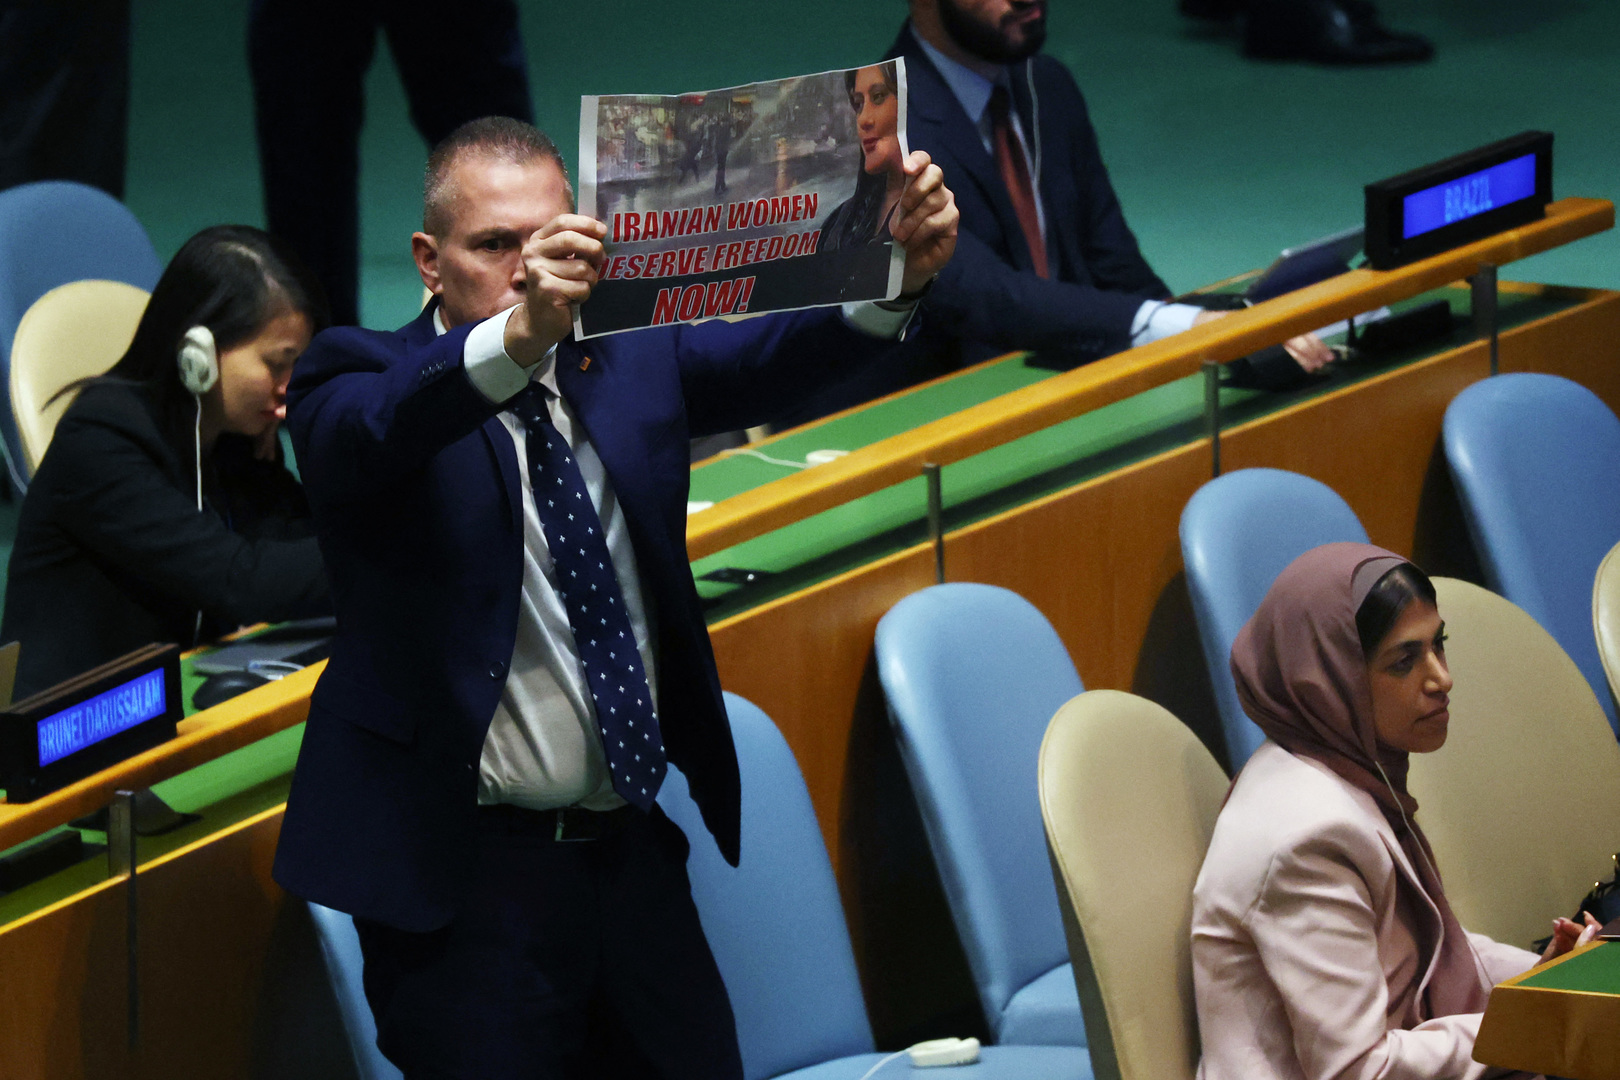 ONU : l'ambassadeur israélien expulsé après avoir protesté durant le discours du président iranien